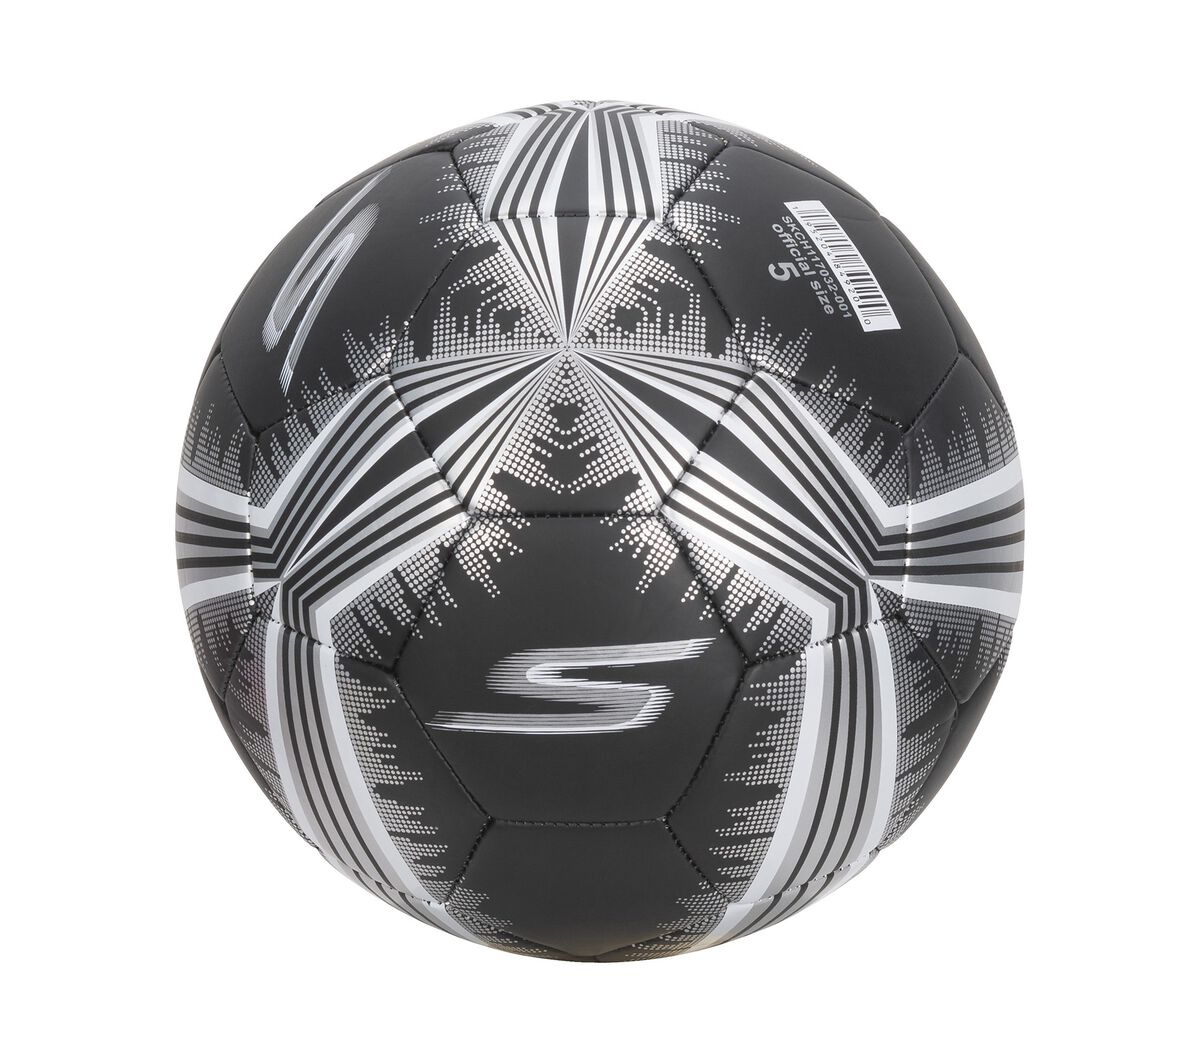 Bola de Futsal Penalty Max 1000 All Black - Edição Limitada